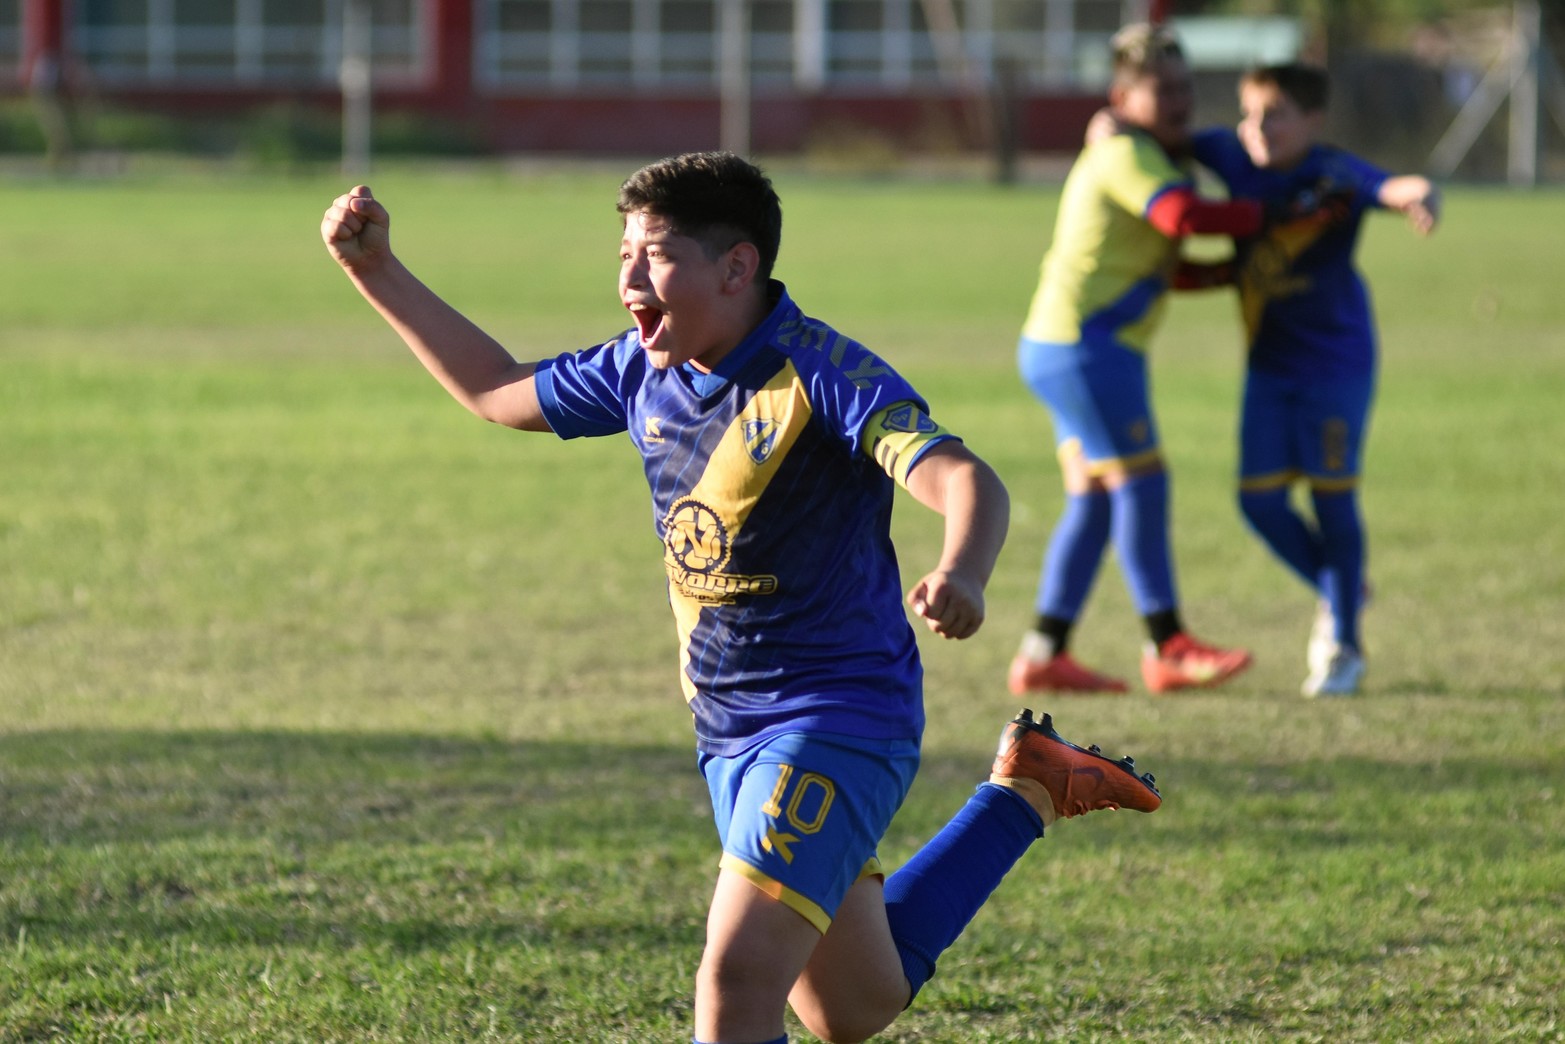 Torneo fútbol infantil en La Perla del oeste. Este domingo finalizó el campeonato que albergó a mas de 1.000 pibes de toda la región. 